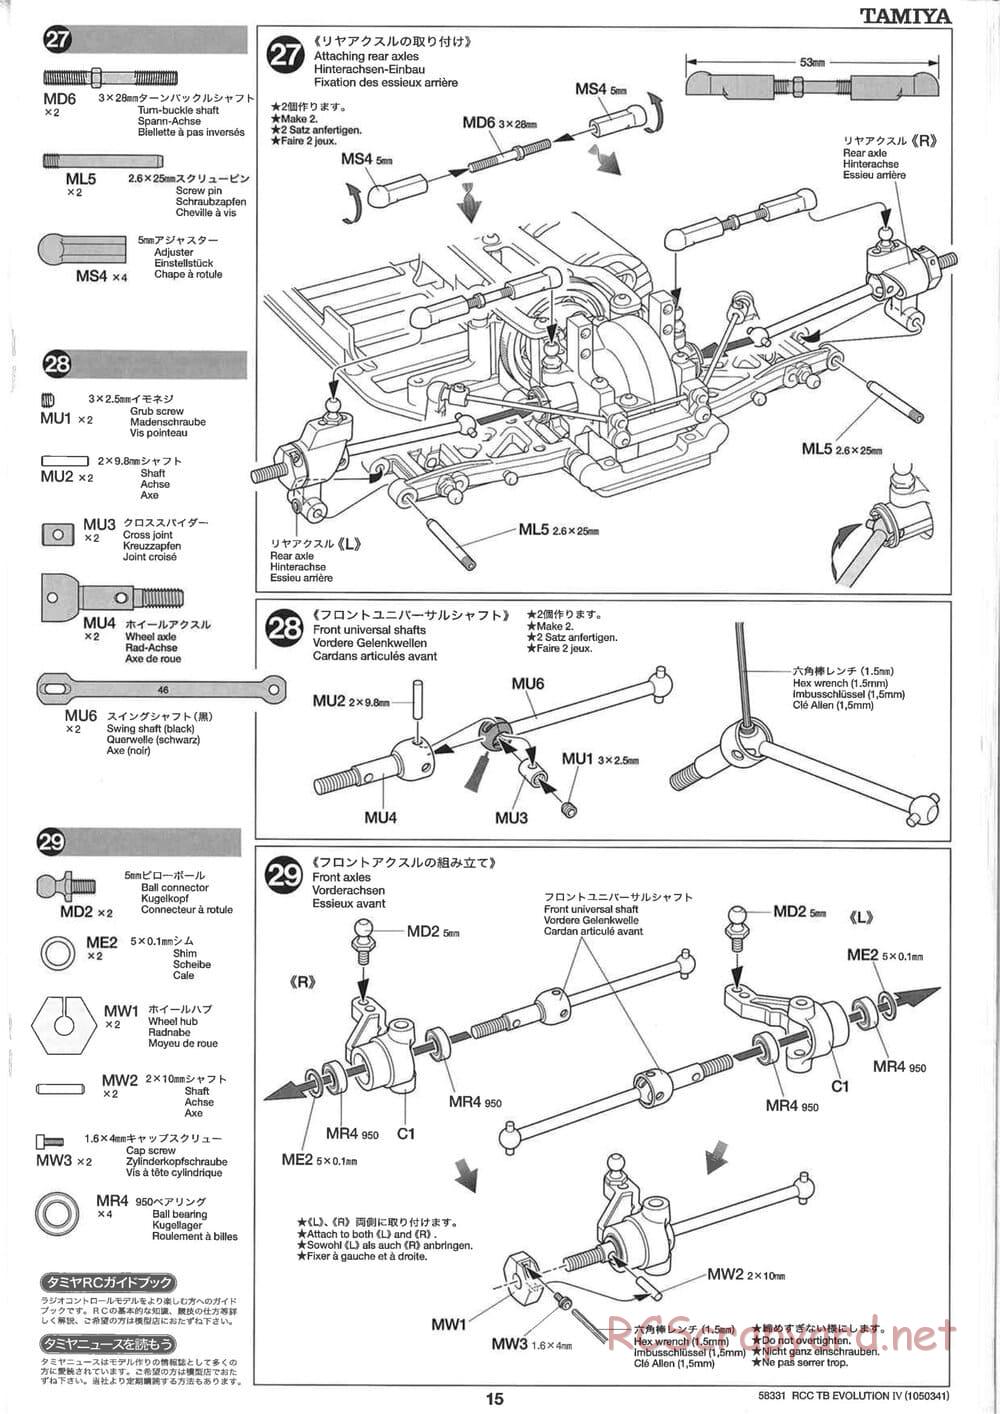 Tamiya - TB Evolution IV Chassis - Manual - Page 15